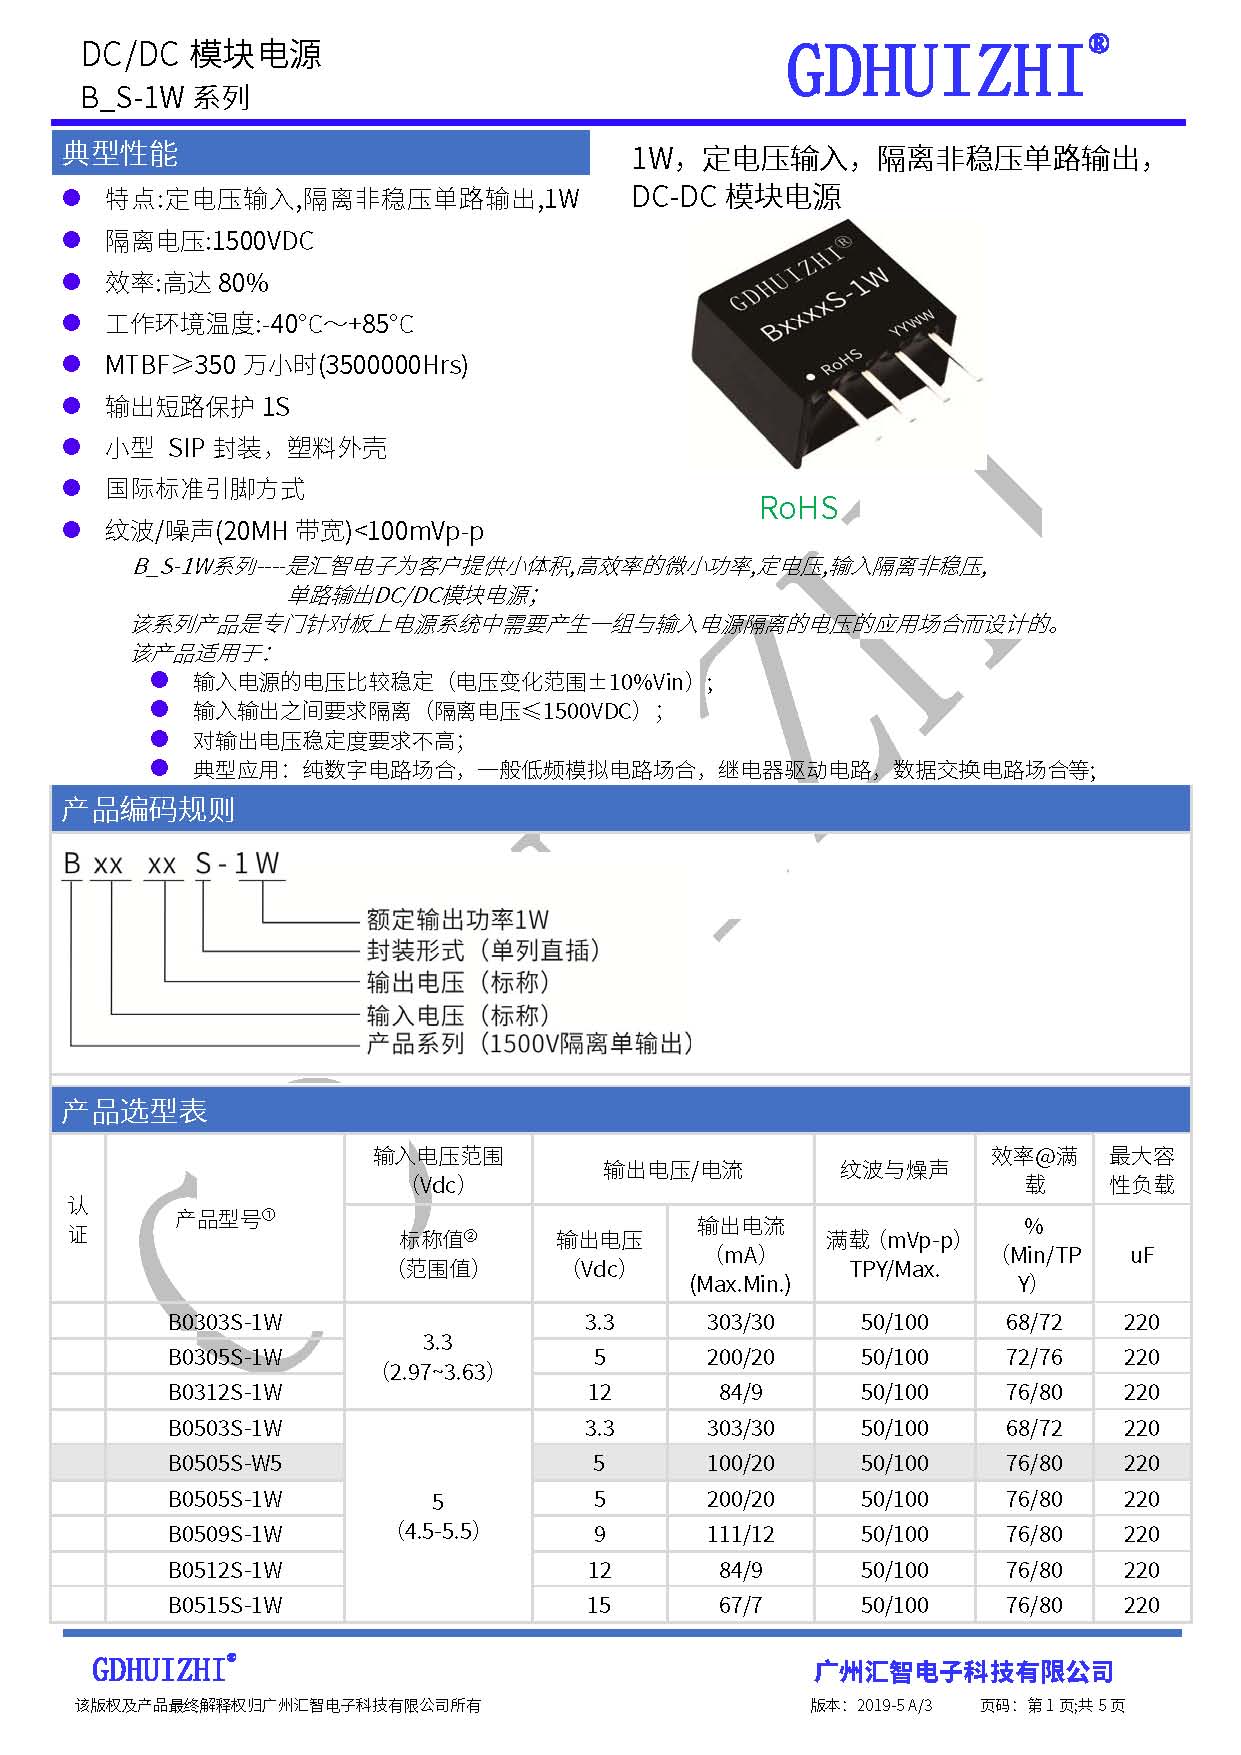 B1209S-1W电源模块 模块电源